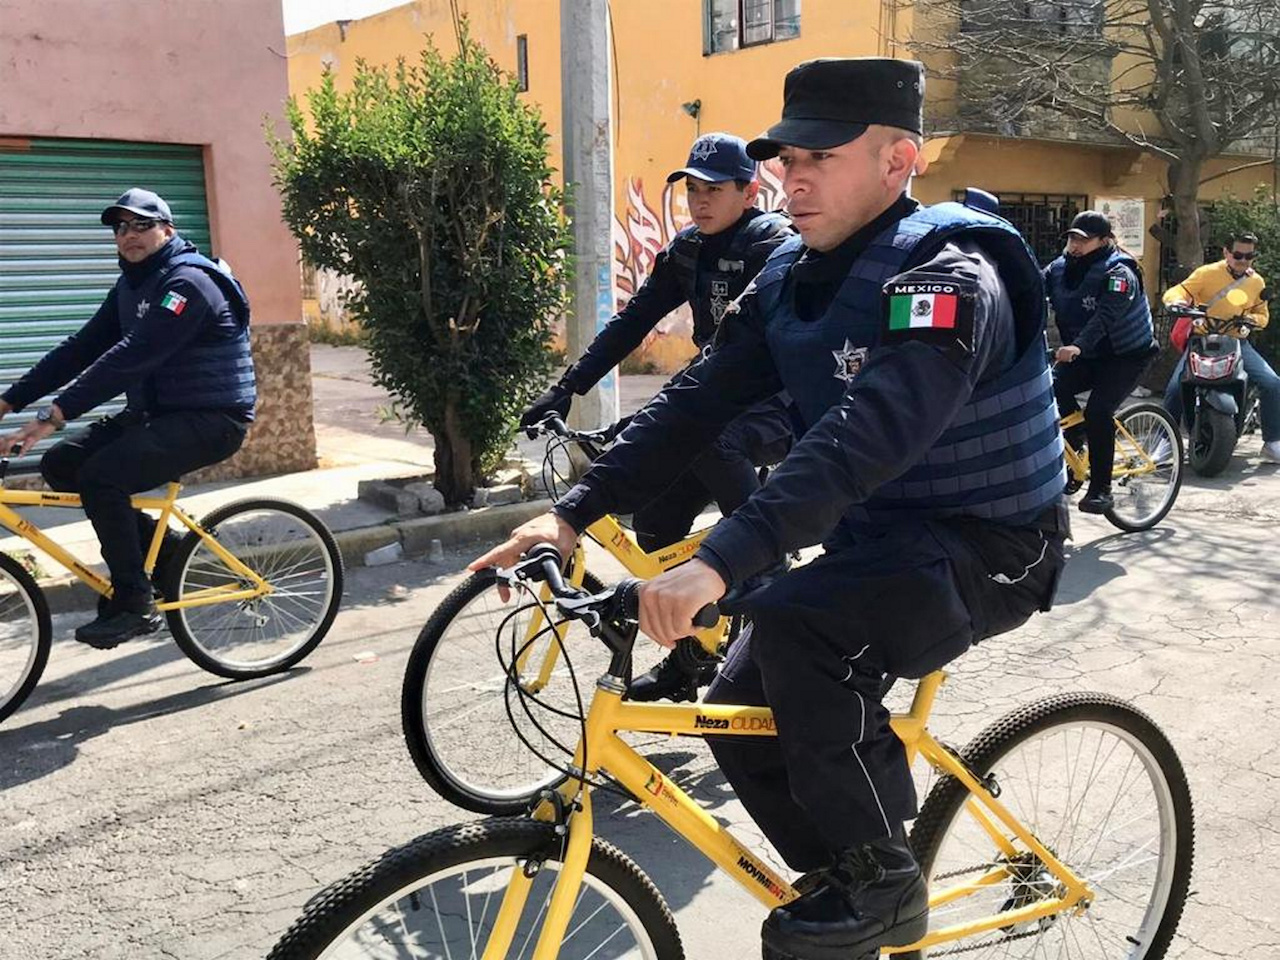 Ciudad-Neza-desabasto-gasolina-Policias-bici-delincuencia